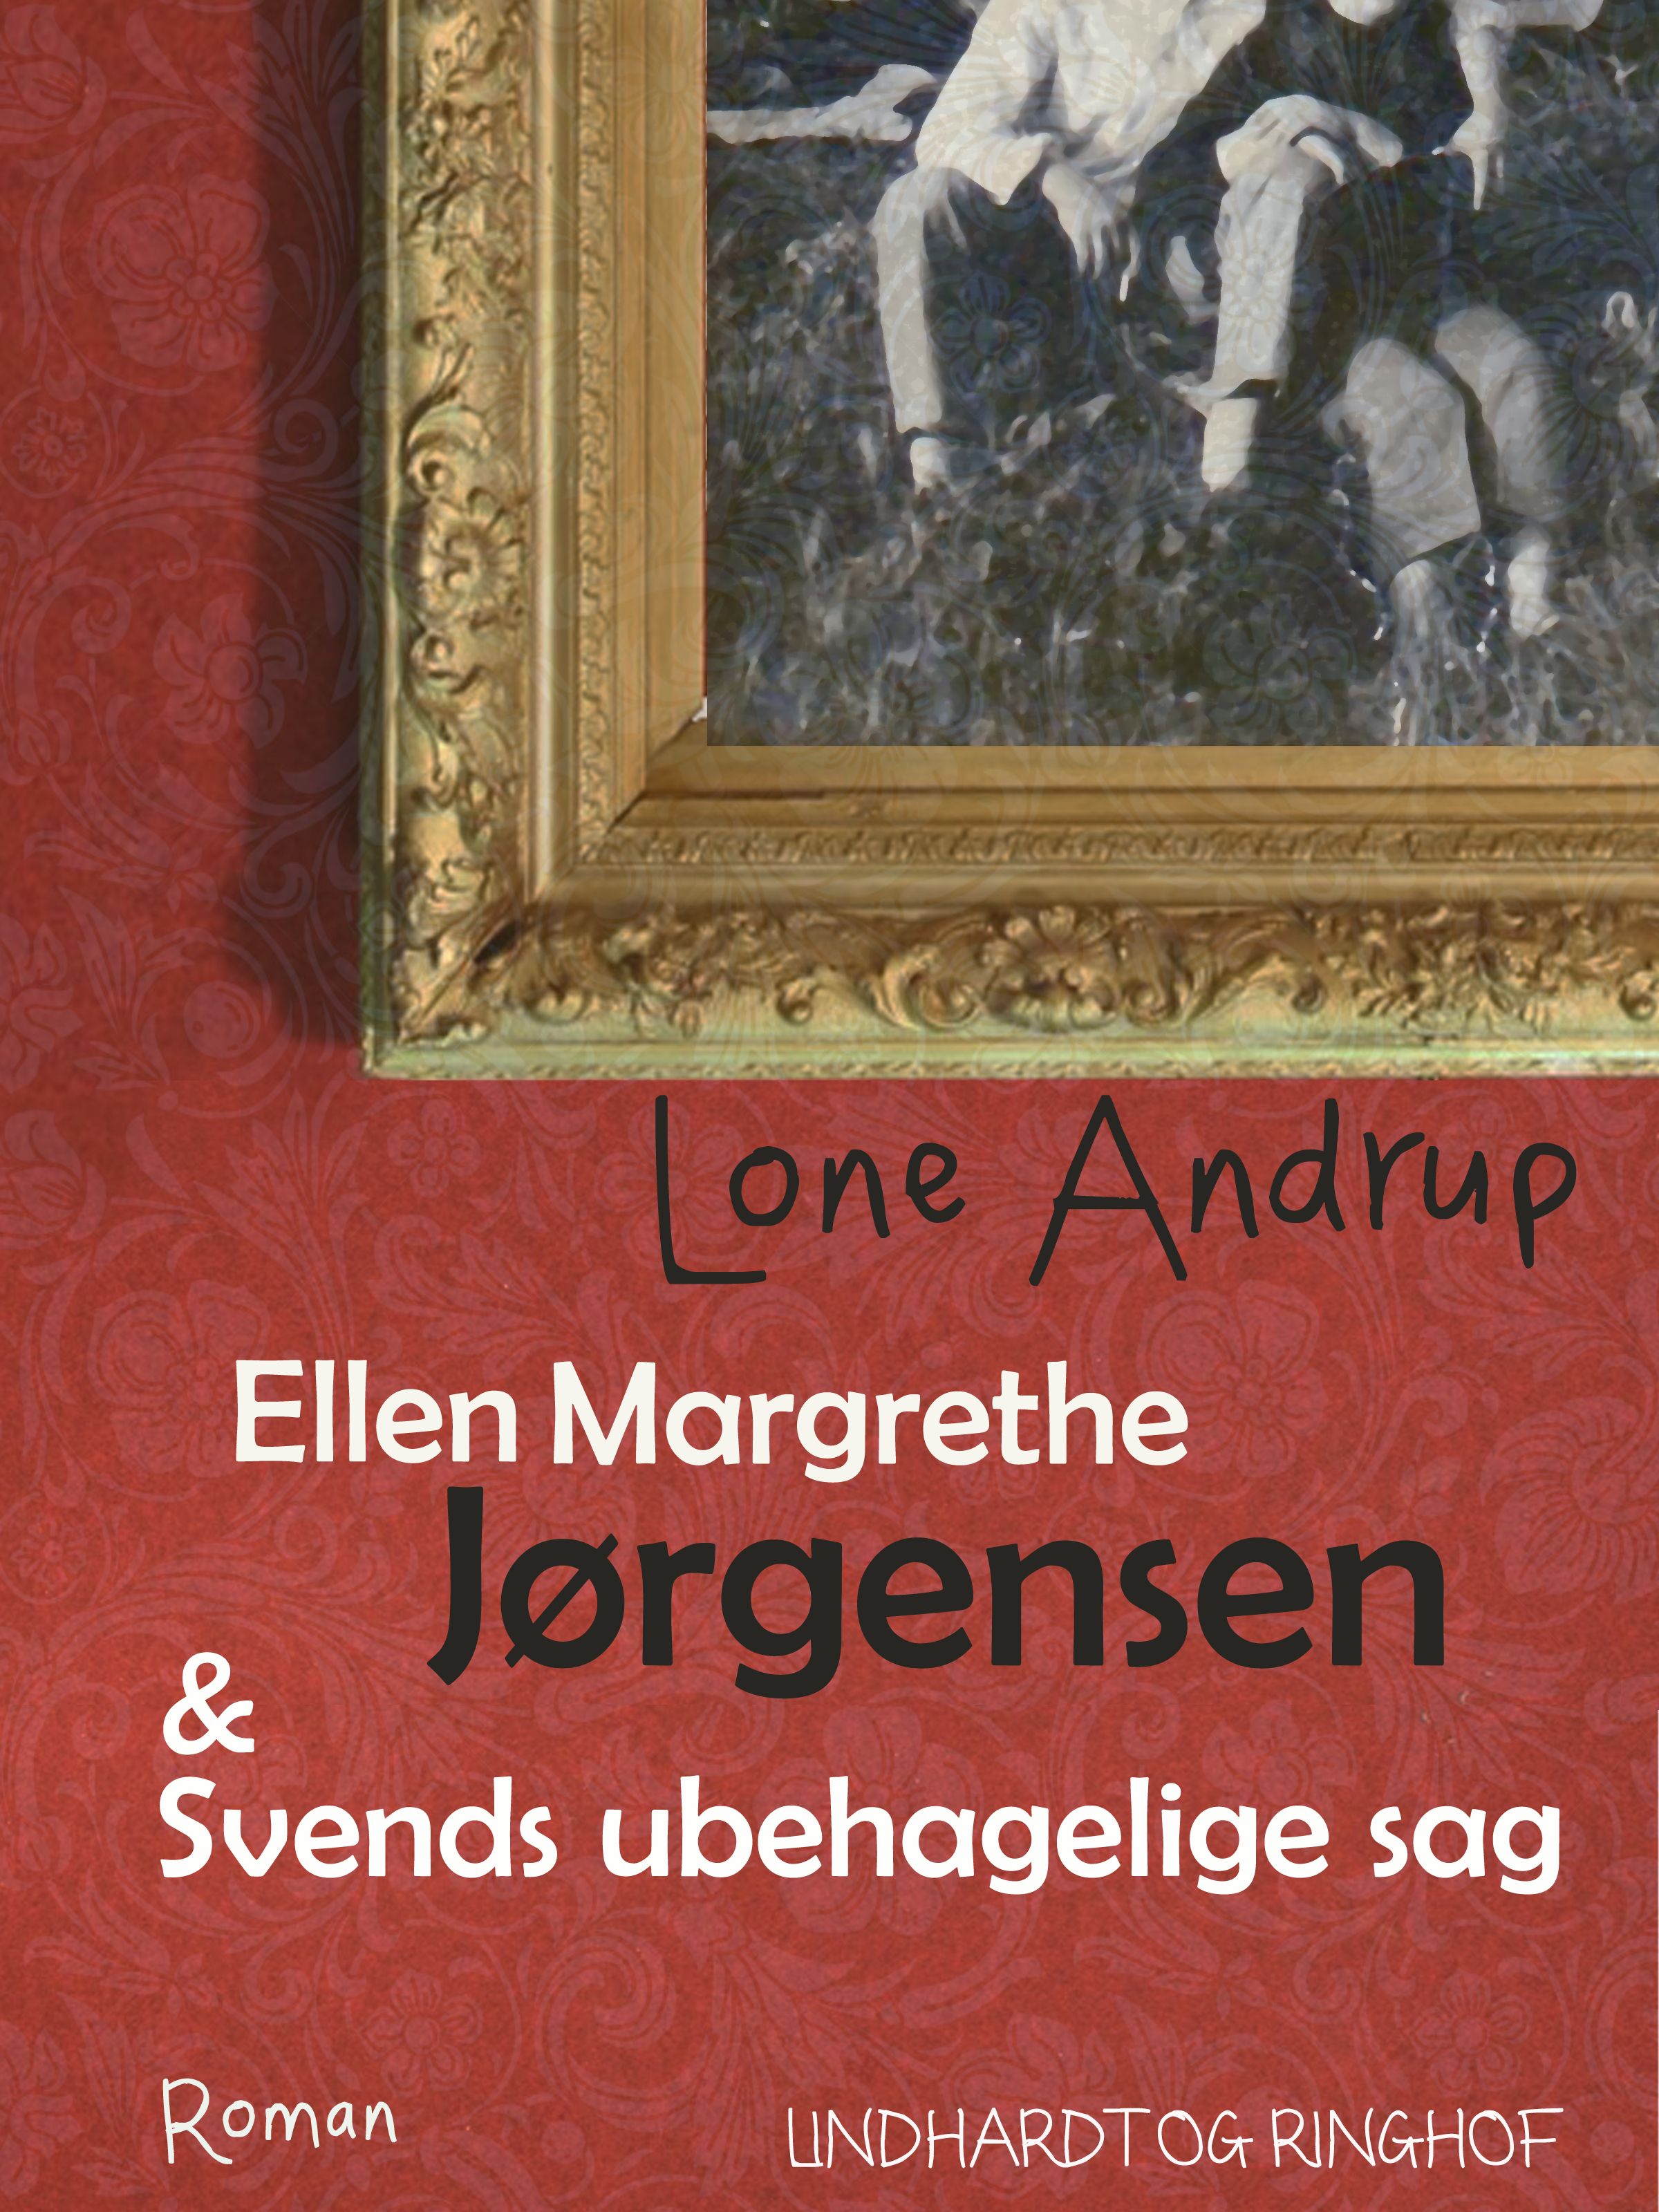 Ellen Margrethe Jørgensen & Svends ubehagelige sag, e-bog af Lone Andrup